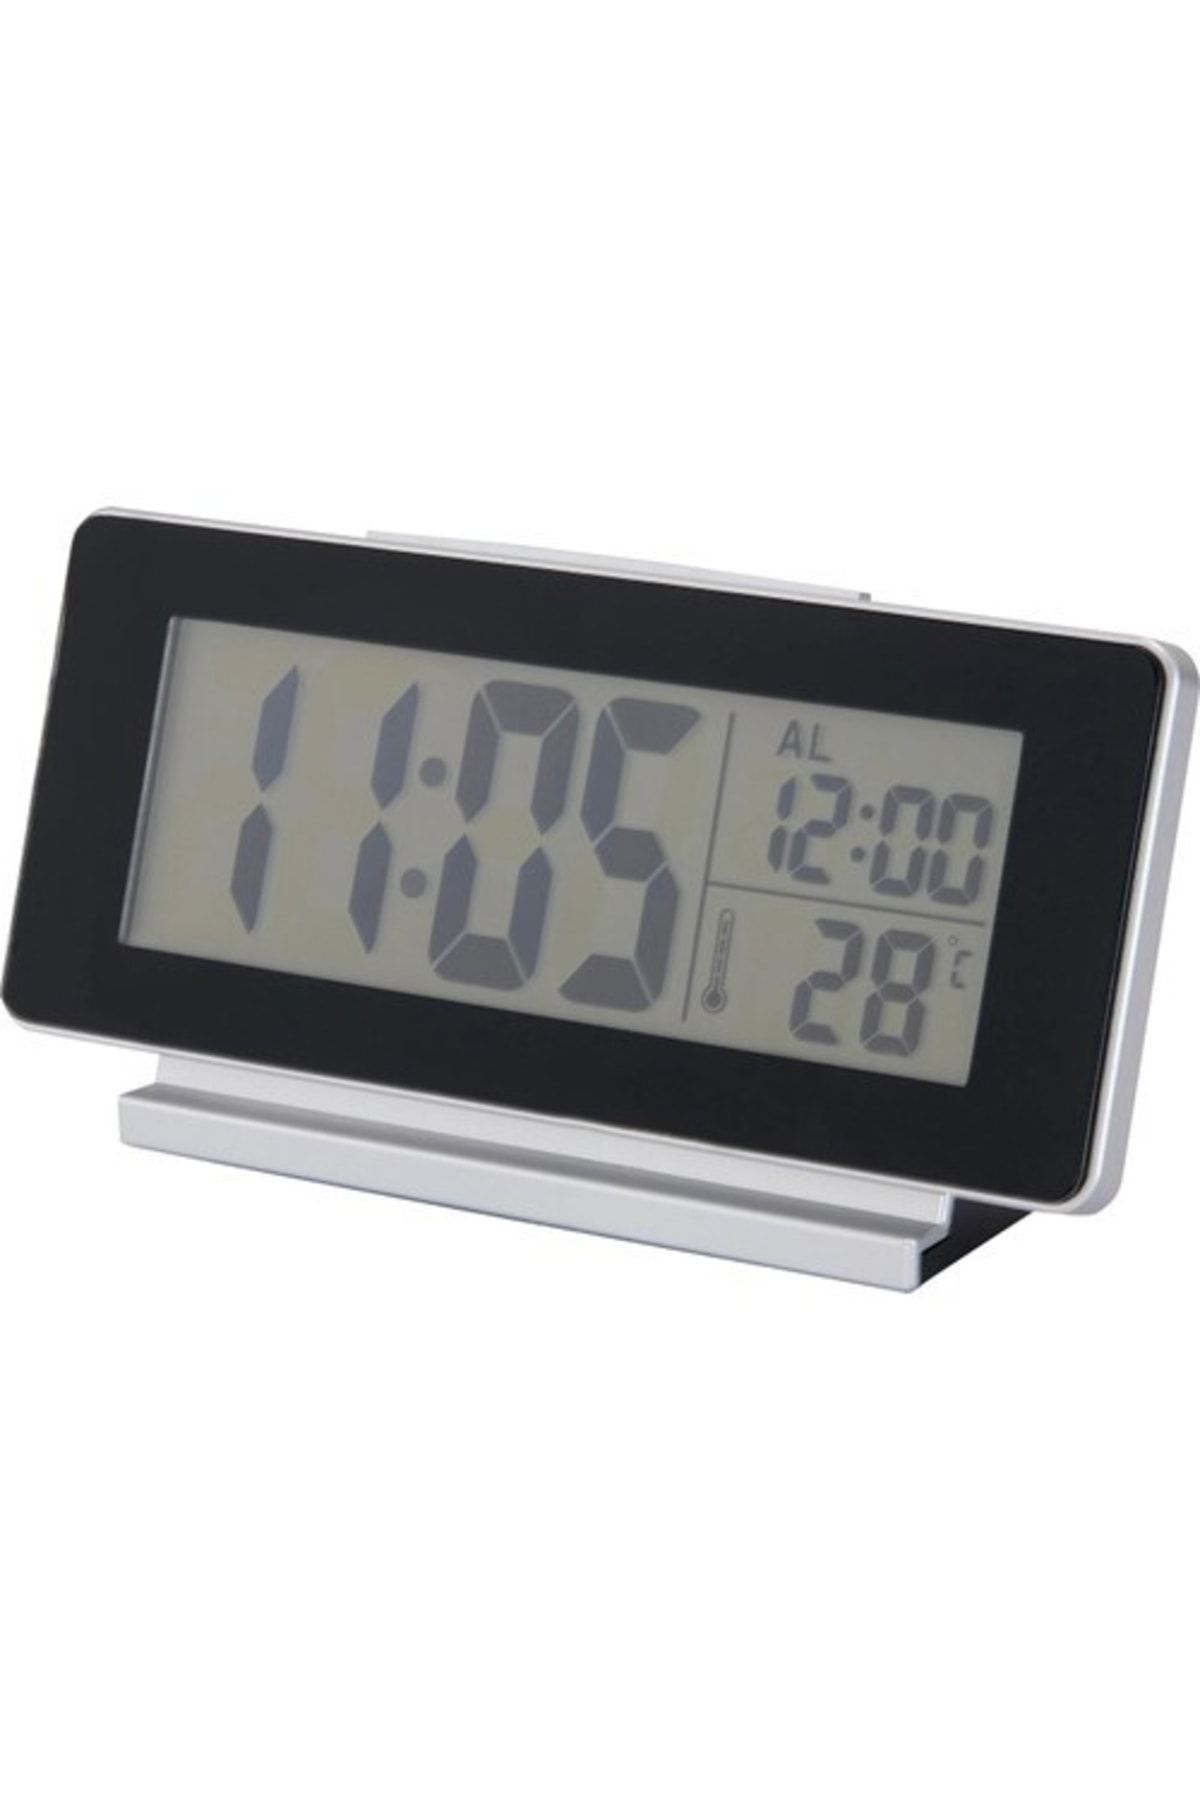 IKEA Fılmıs Çok Fonksiyonlu Alarmlı Ve Termometreli Dijital Masa Saati